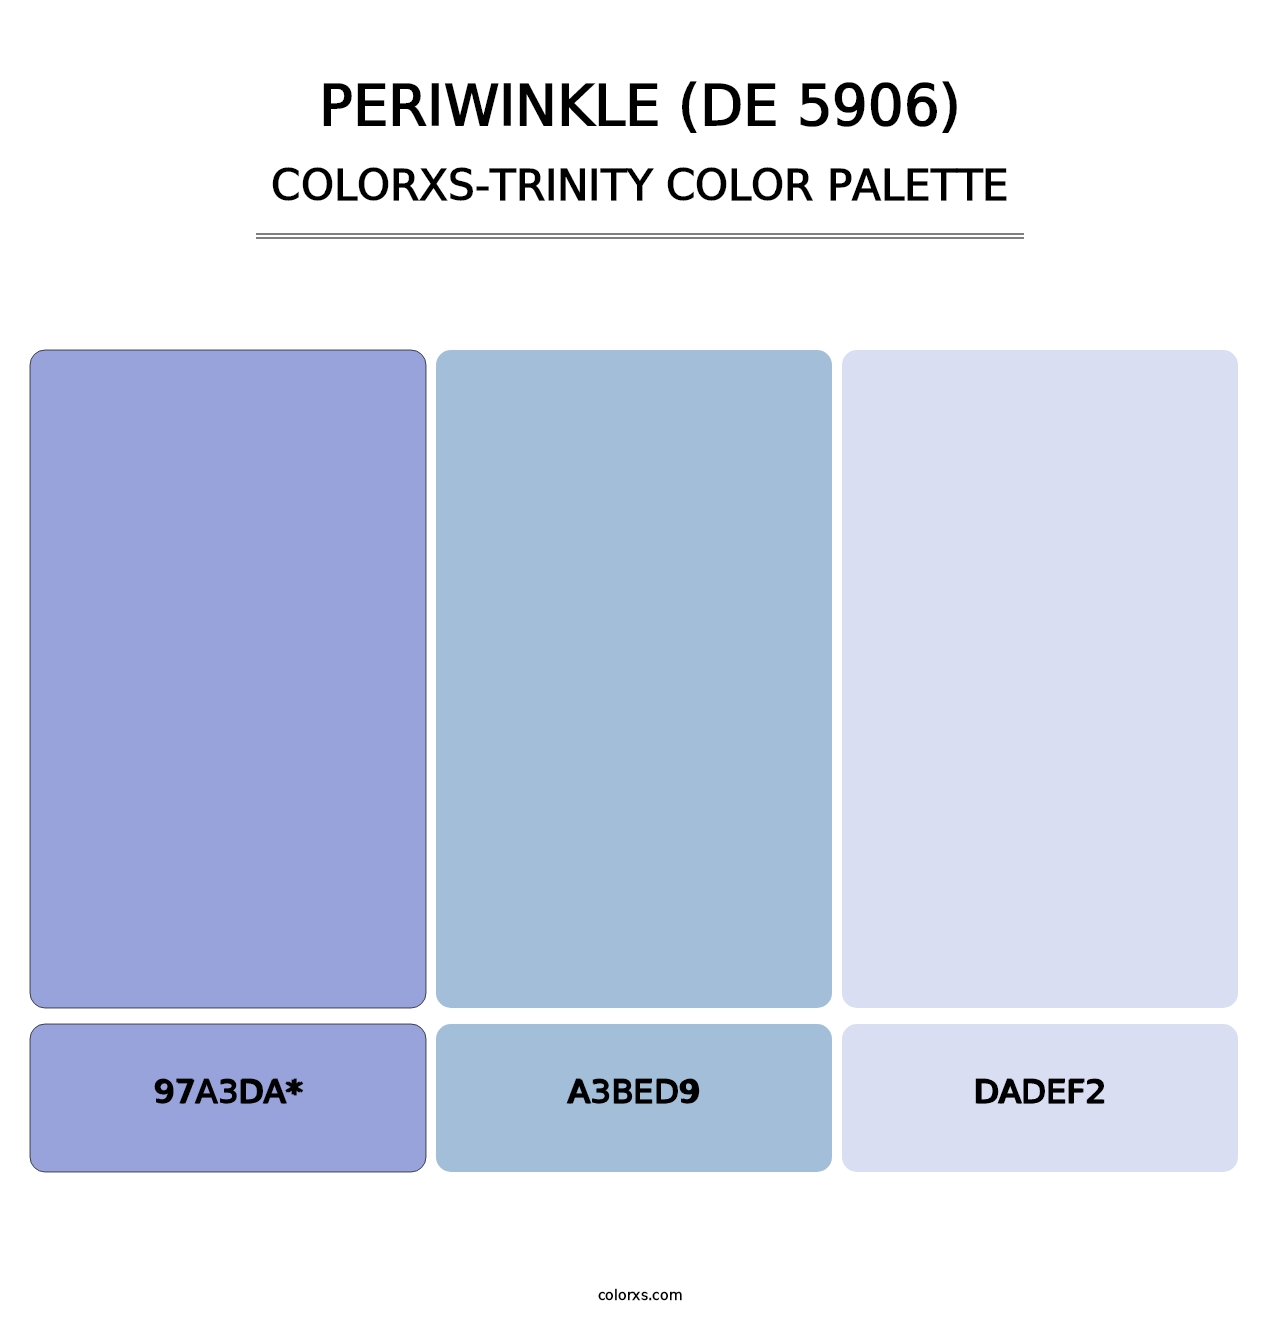 Periwinkle (DE 5906) - Colorxs Trinity Palette